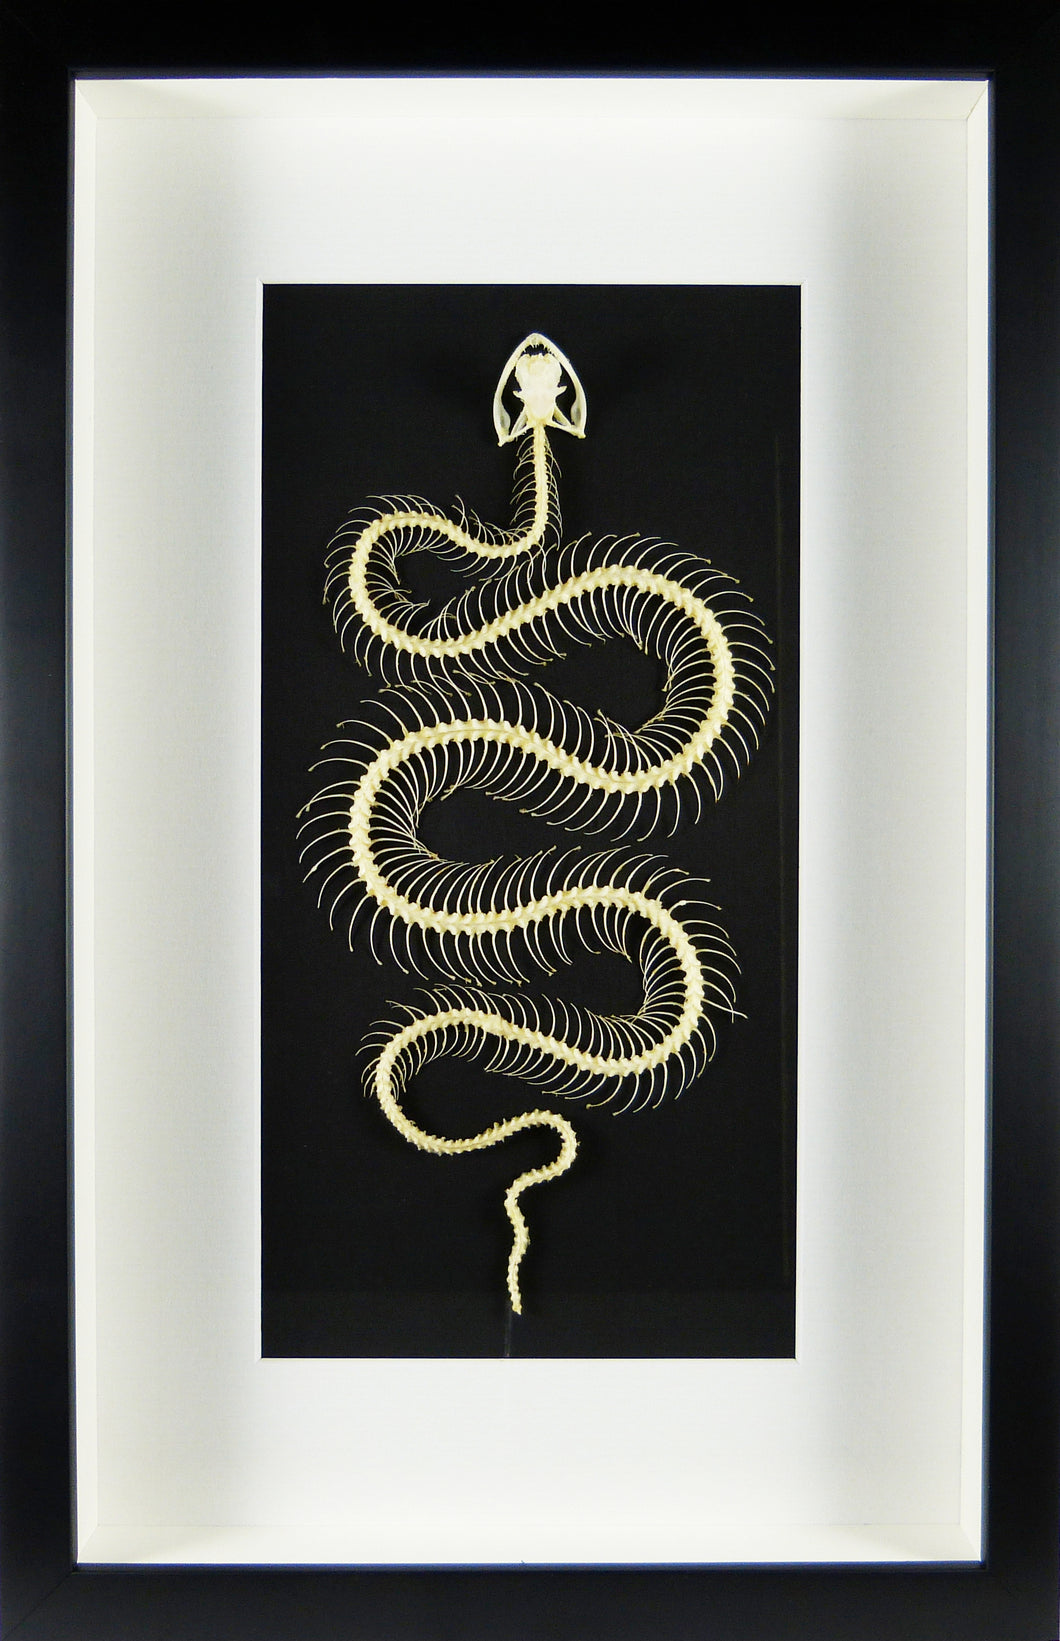 Squelette de serpent encadré Crotale des bambous Trimeresurus albolabris cadre laqué noir fond noir passe-partout blanc